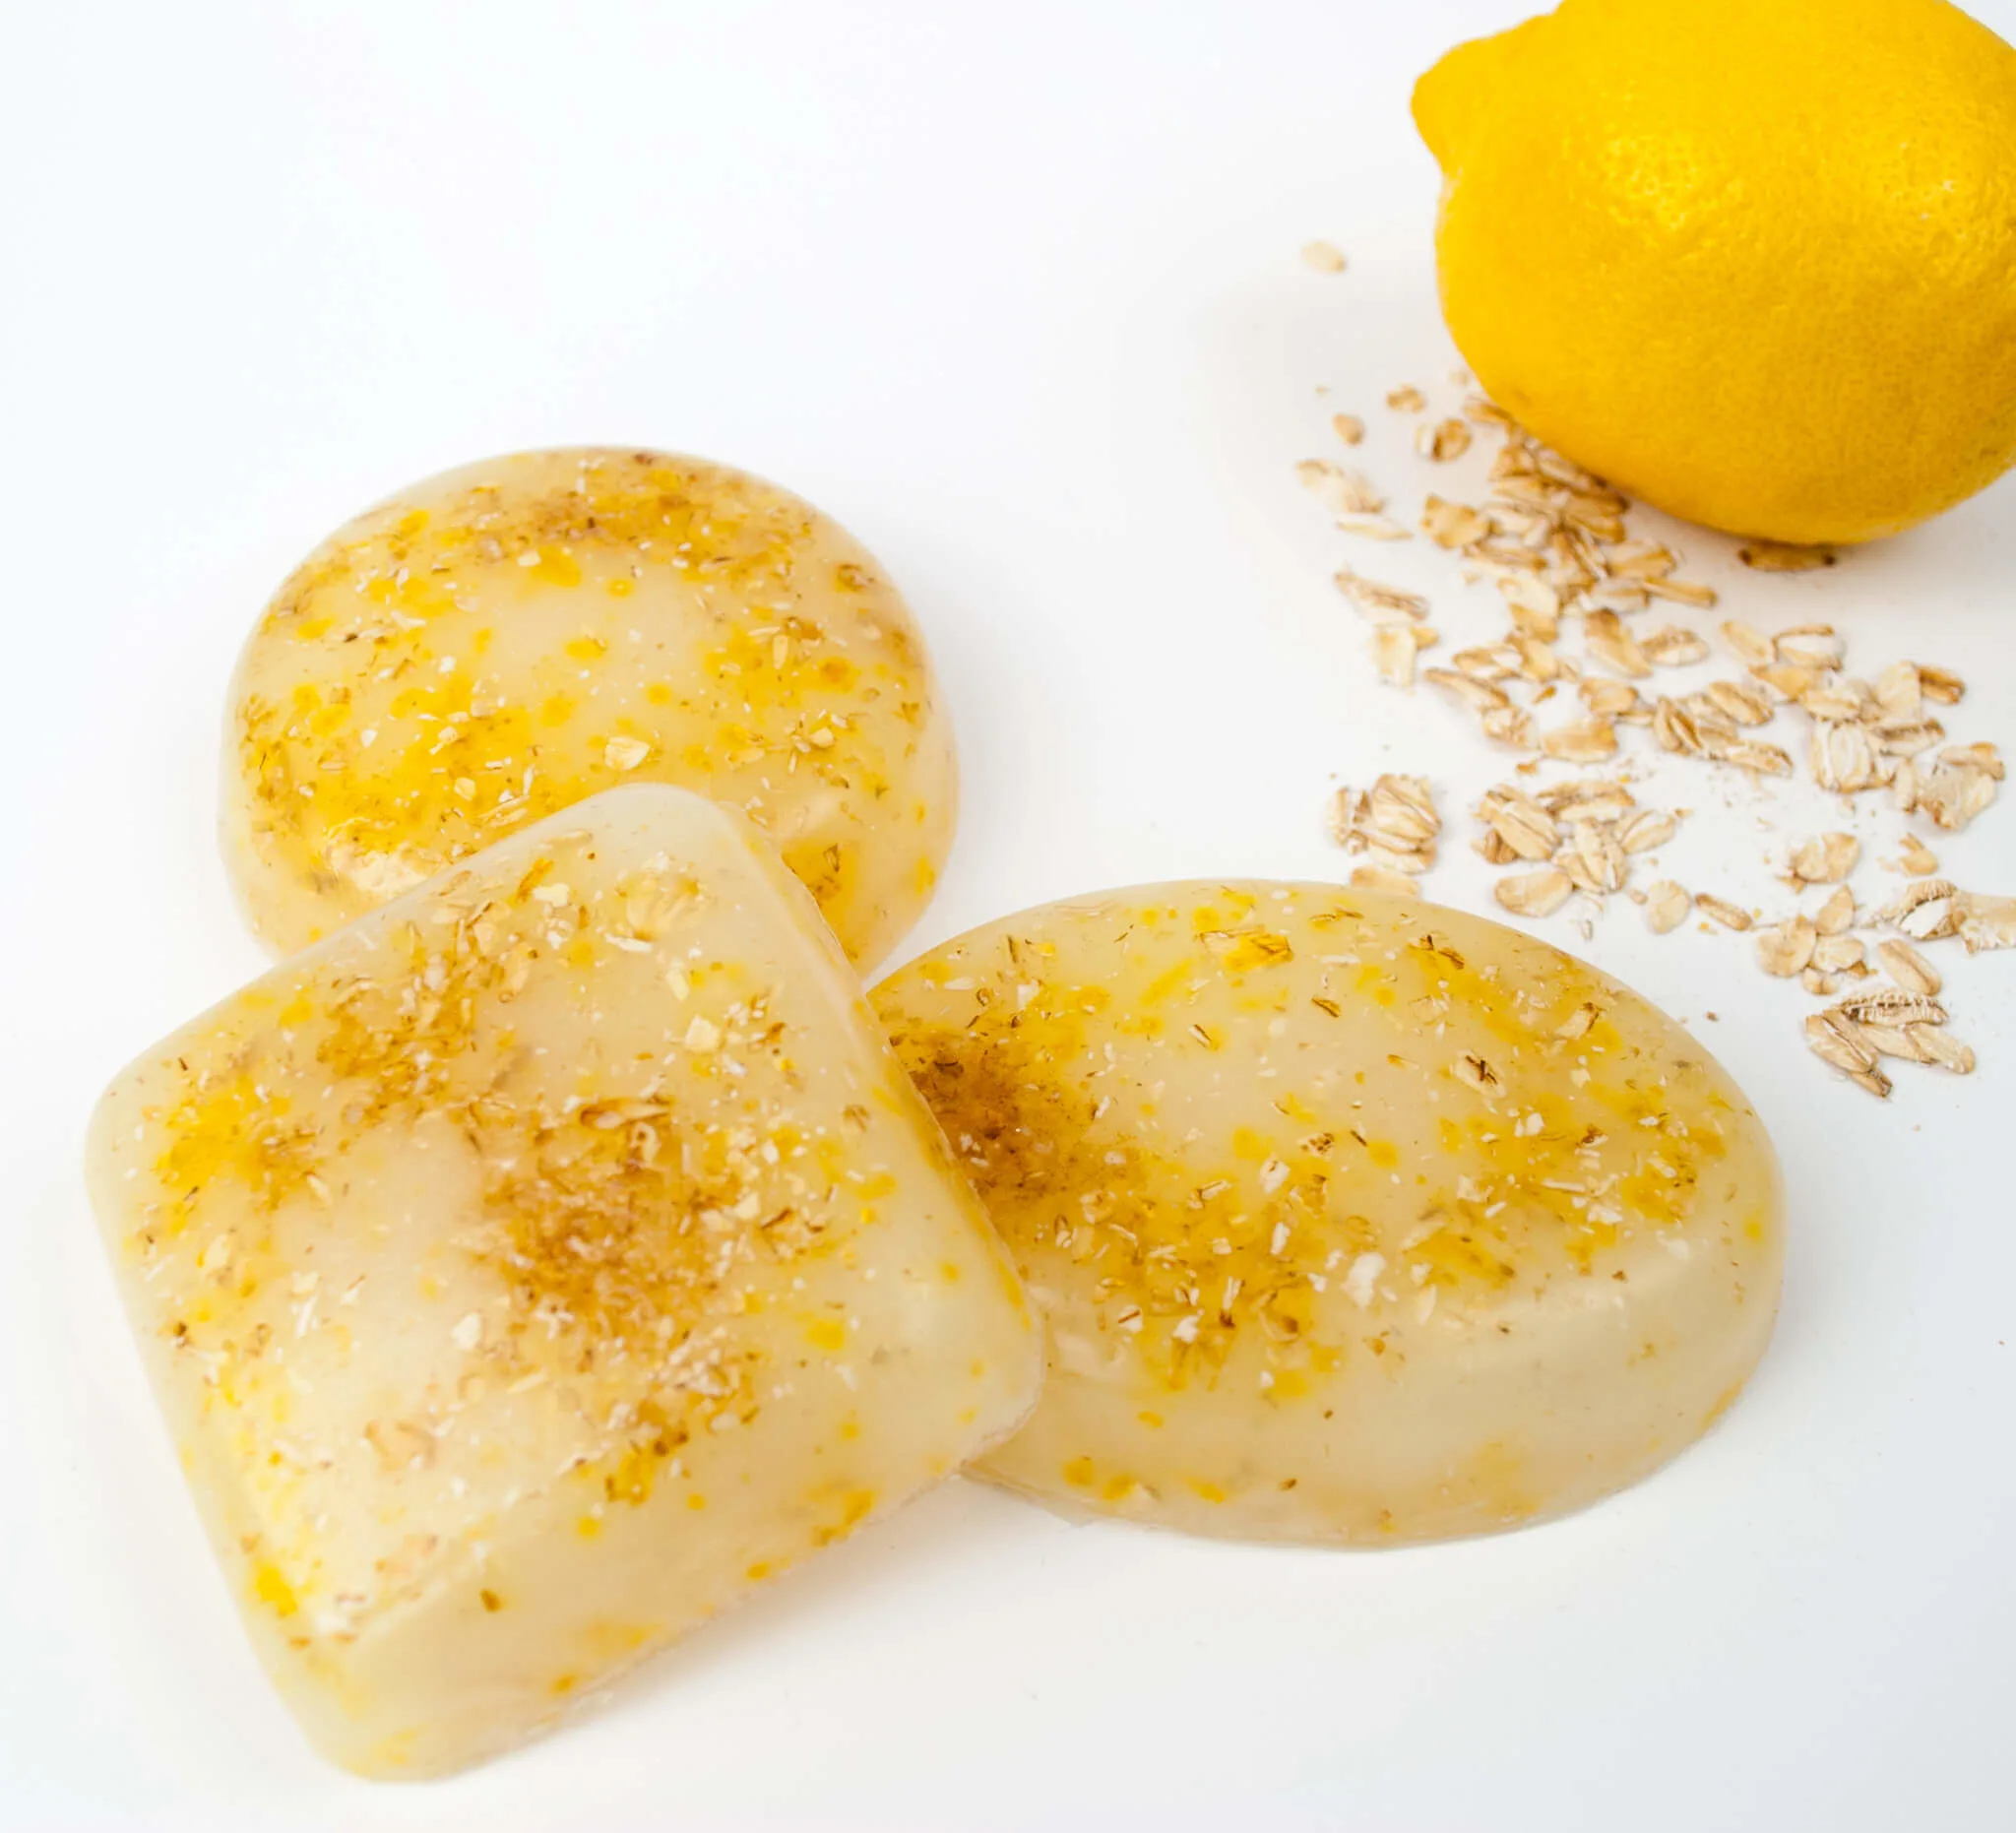 DIY Lemon and Oatmeal Soap